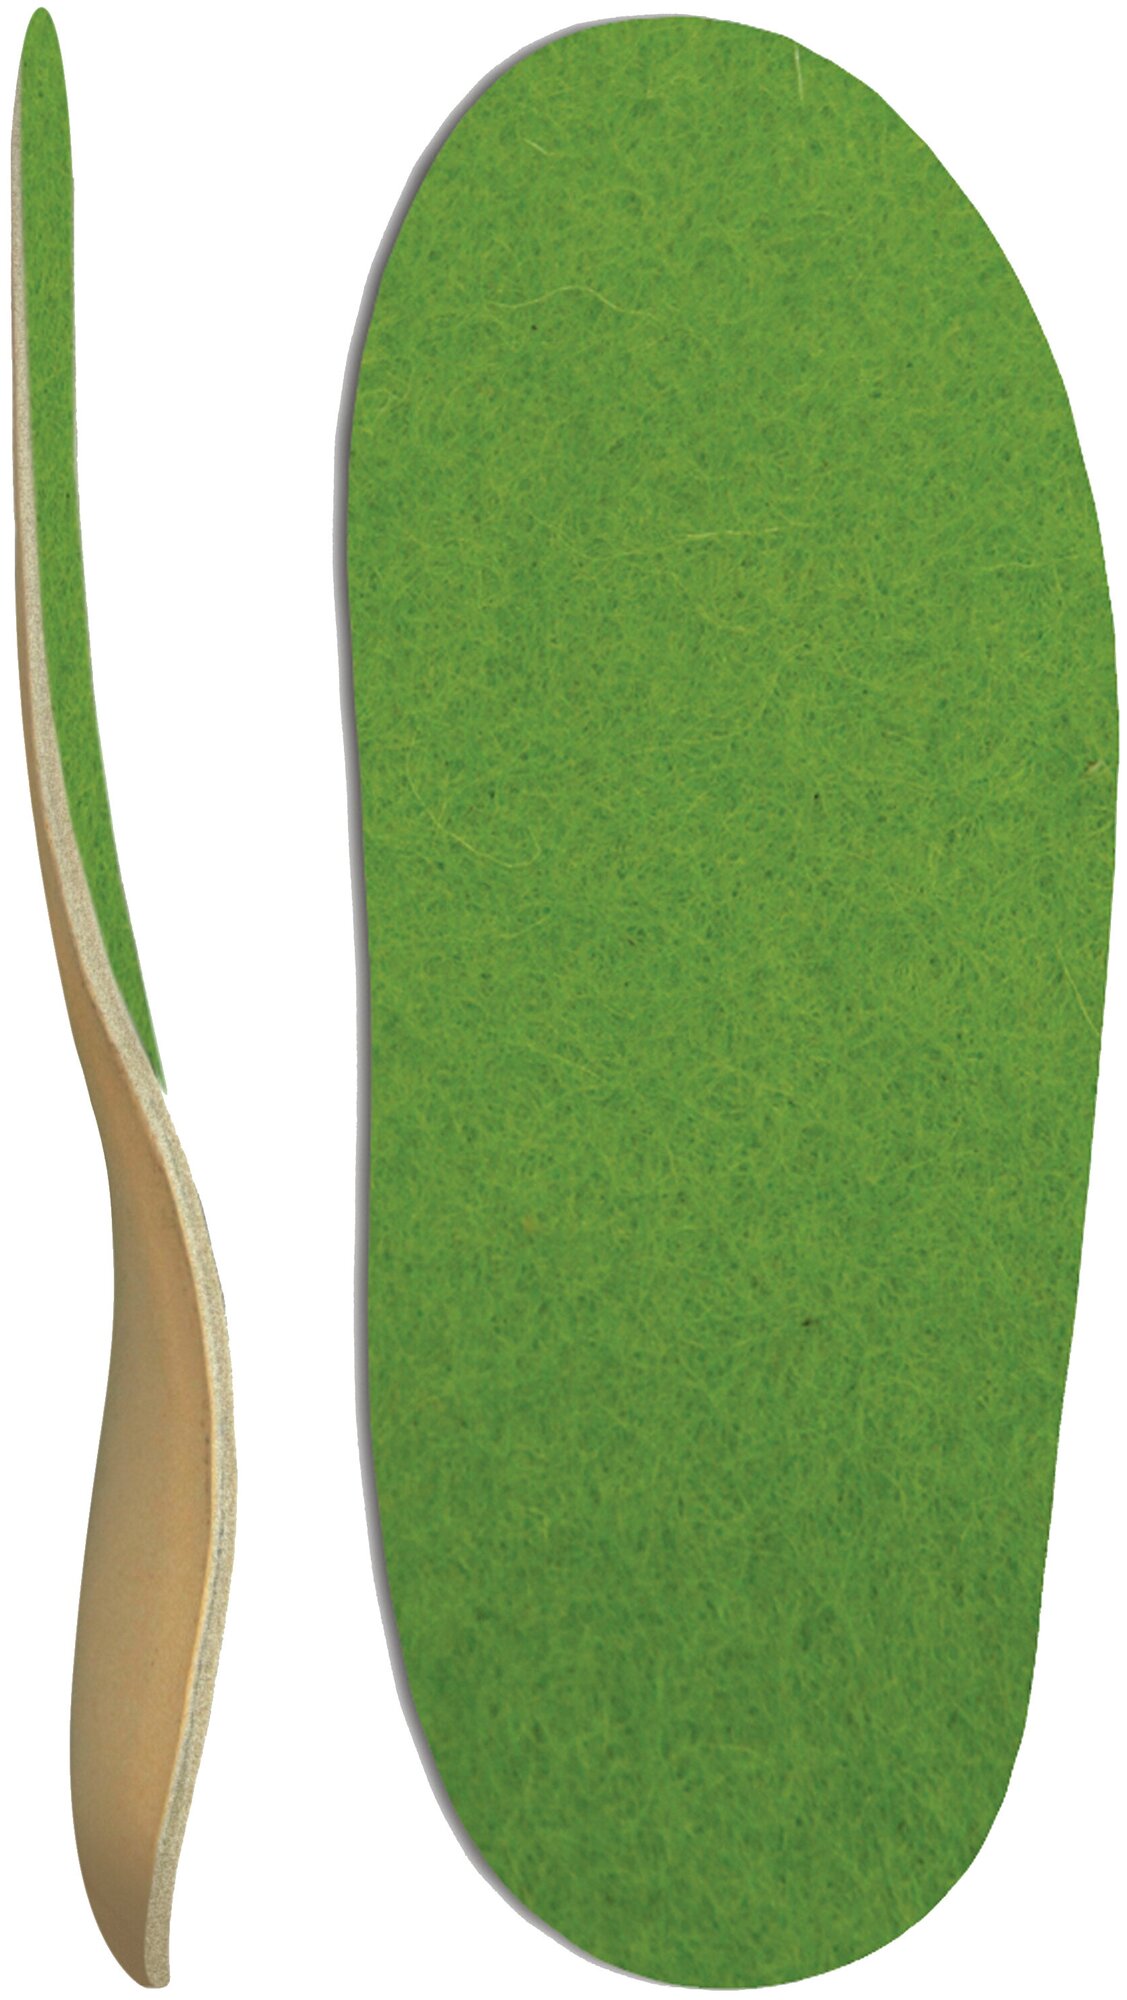 Стельки детские ортопедические каркасные "Lama baby", войлок, зеленый, арт. Lum 500T, 13